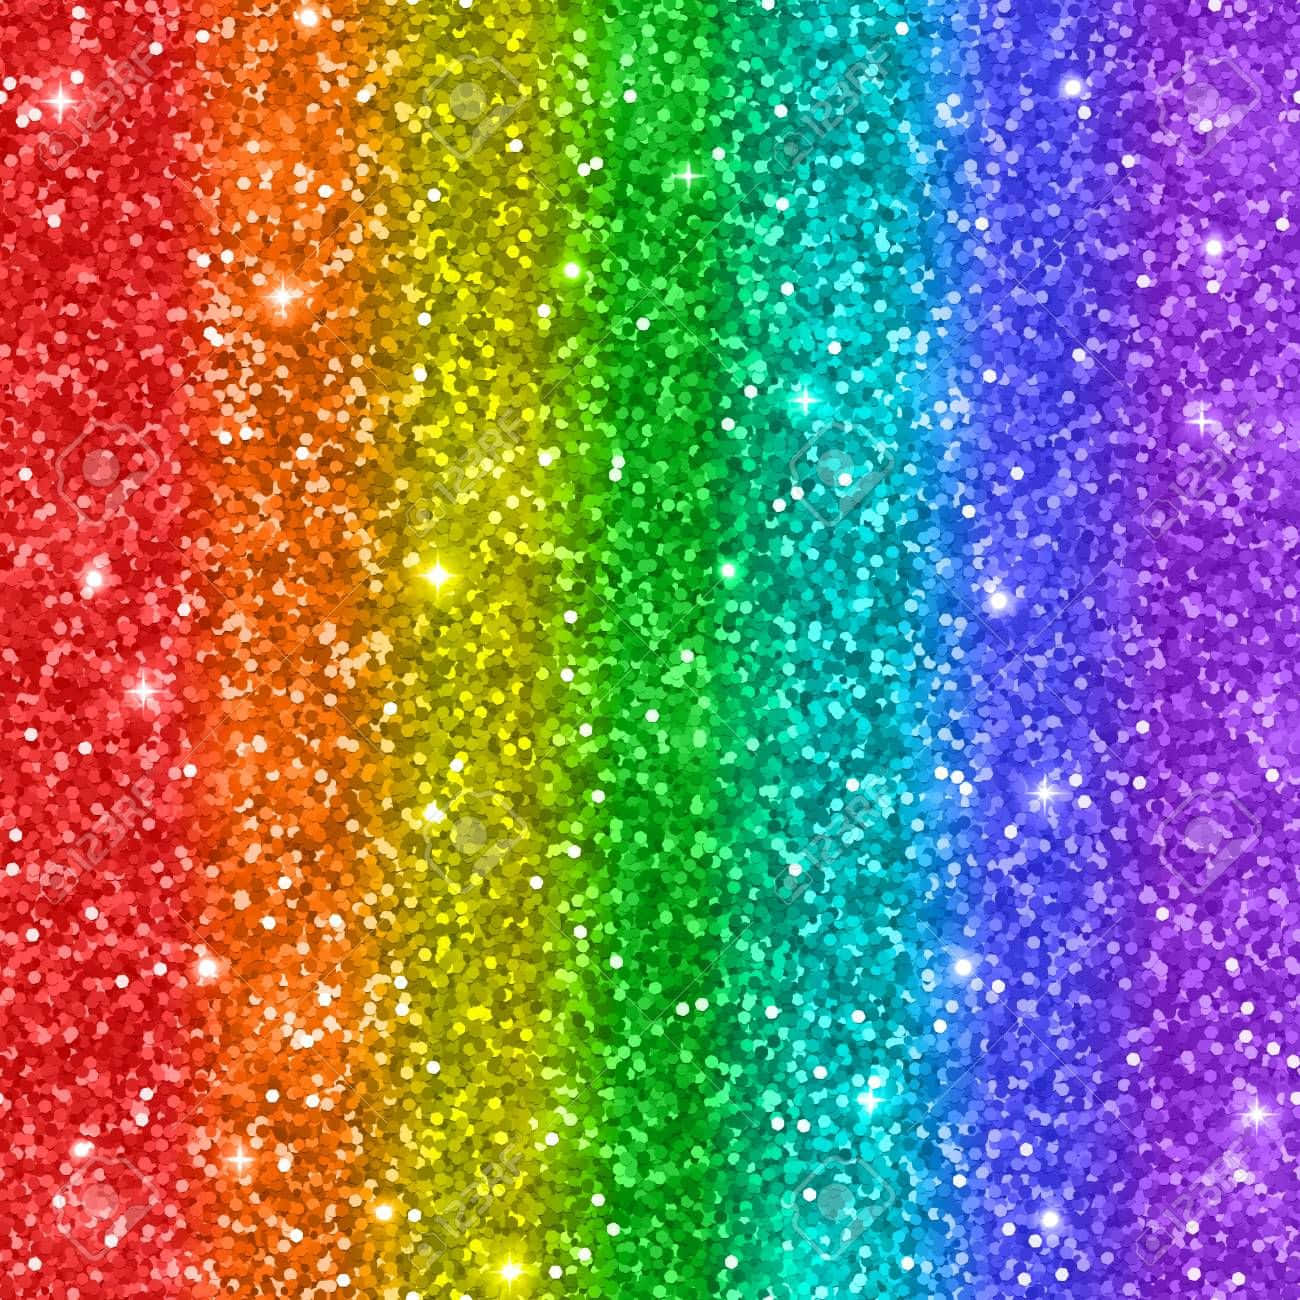 Mitfaszinierenden Farben Und Strahlenden Glitzereffekten Setzt Der Regenbogen-glitzer Diese Wunderschöne Szene In Szene. Wallpaper